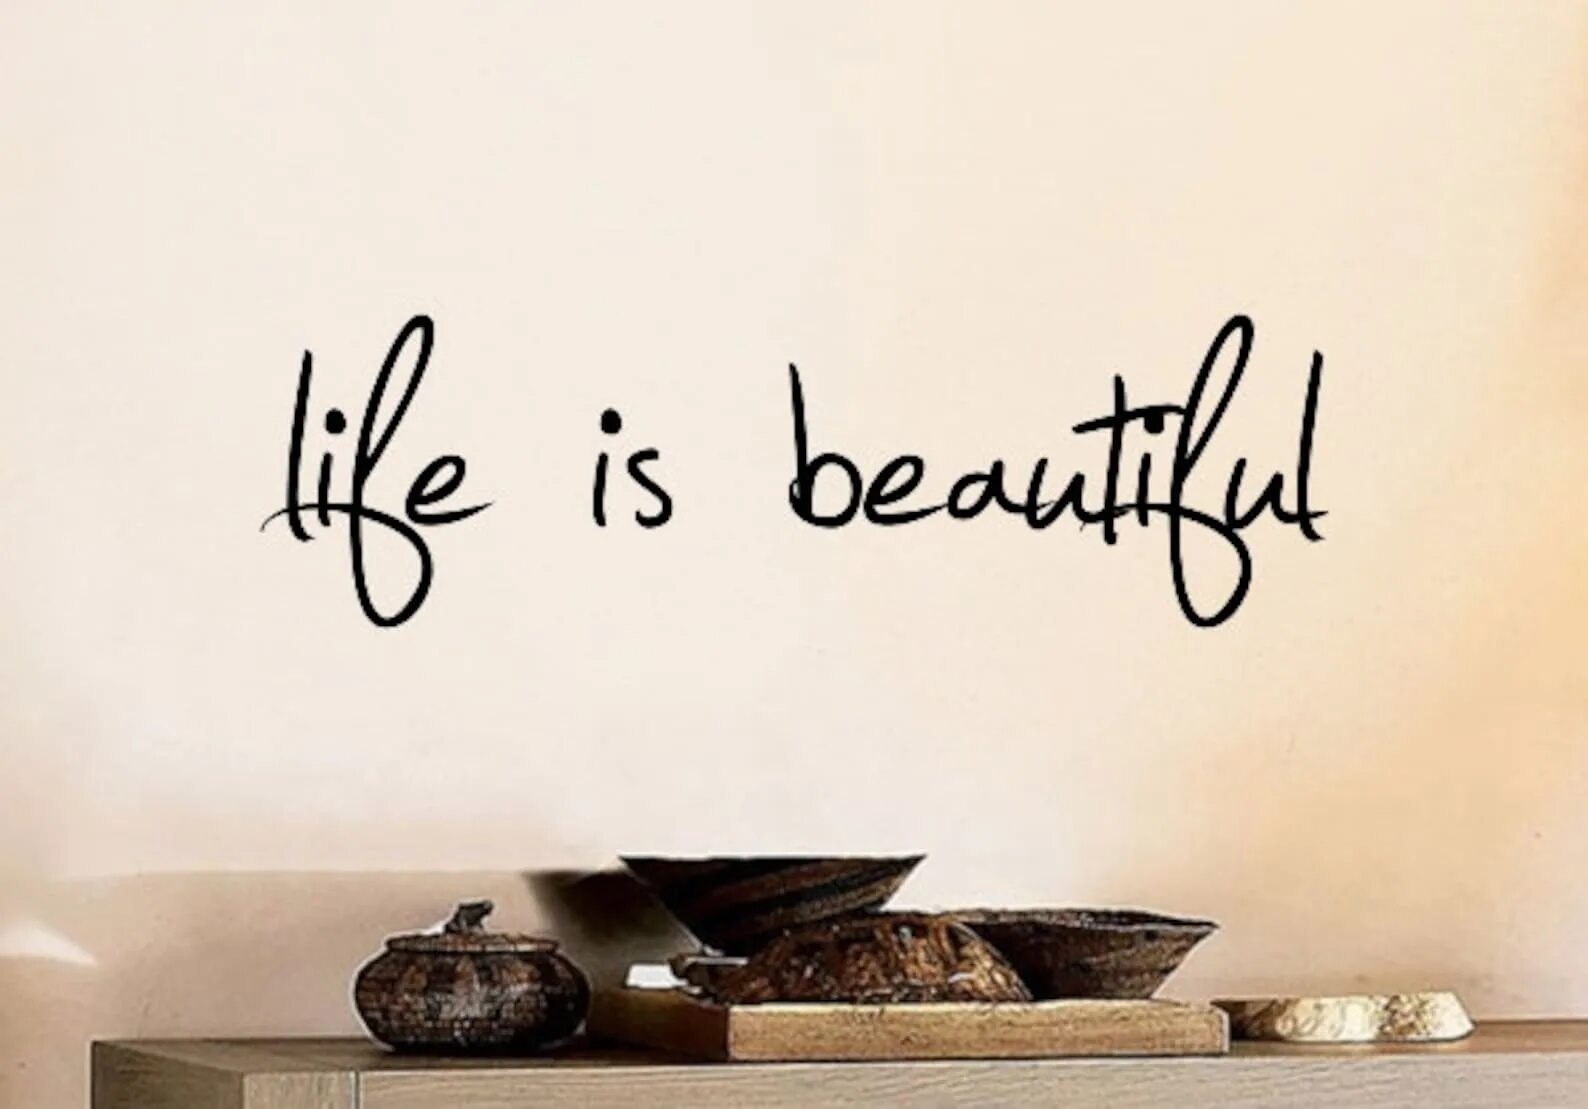 Life is life год. Life надпись. Жизнь прекрасна надпись. Life is beautiful надпись. Life is beautiful красивая надпись.